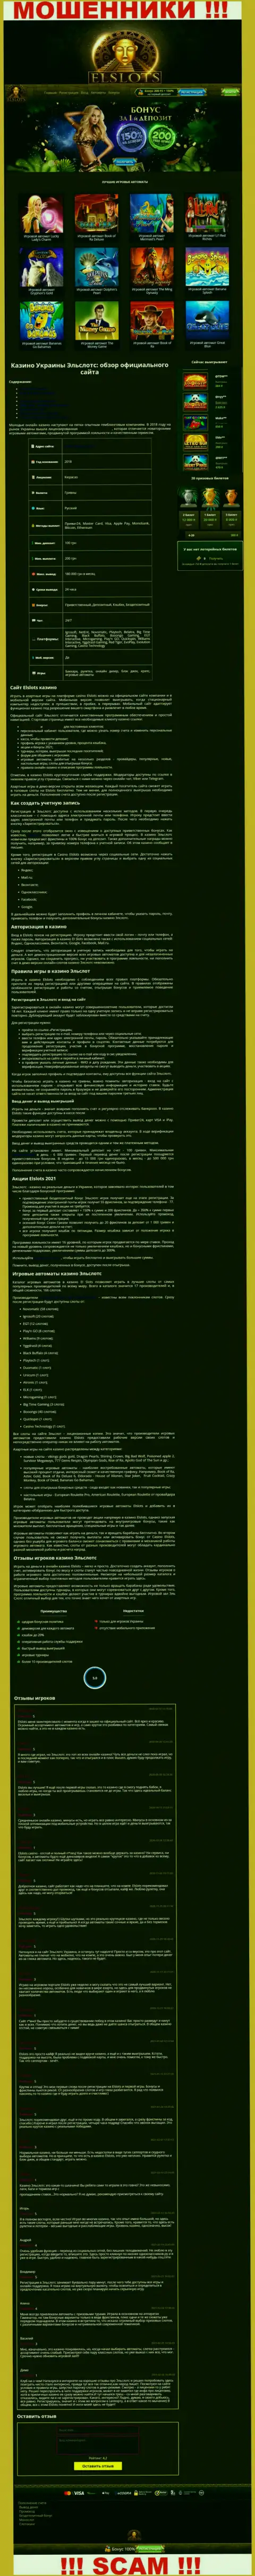 Вид официальной internet-страницы мошеннической конторы Ел Слотс